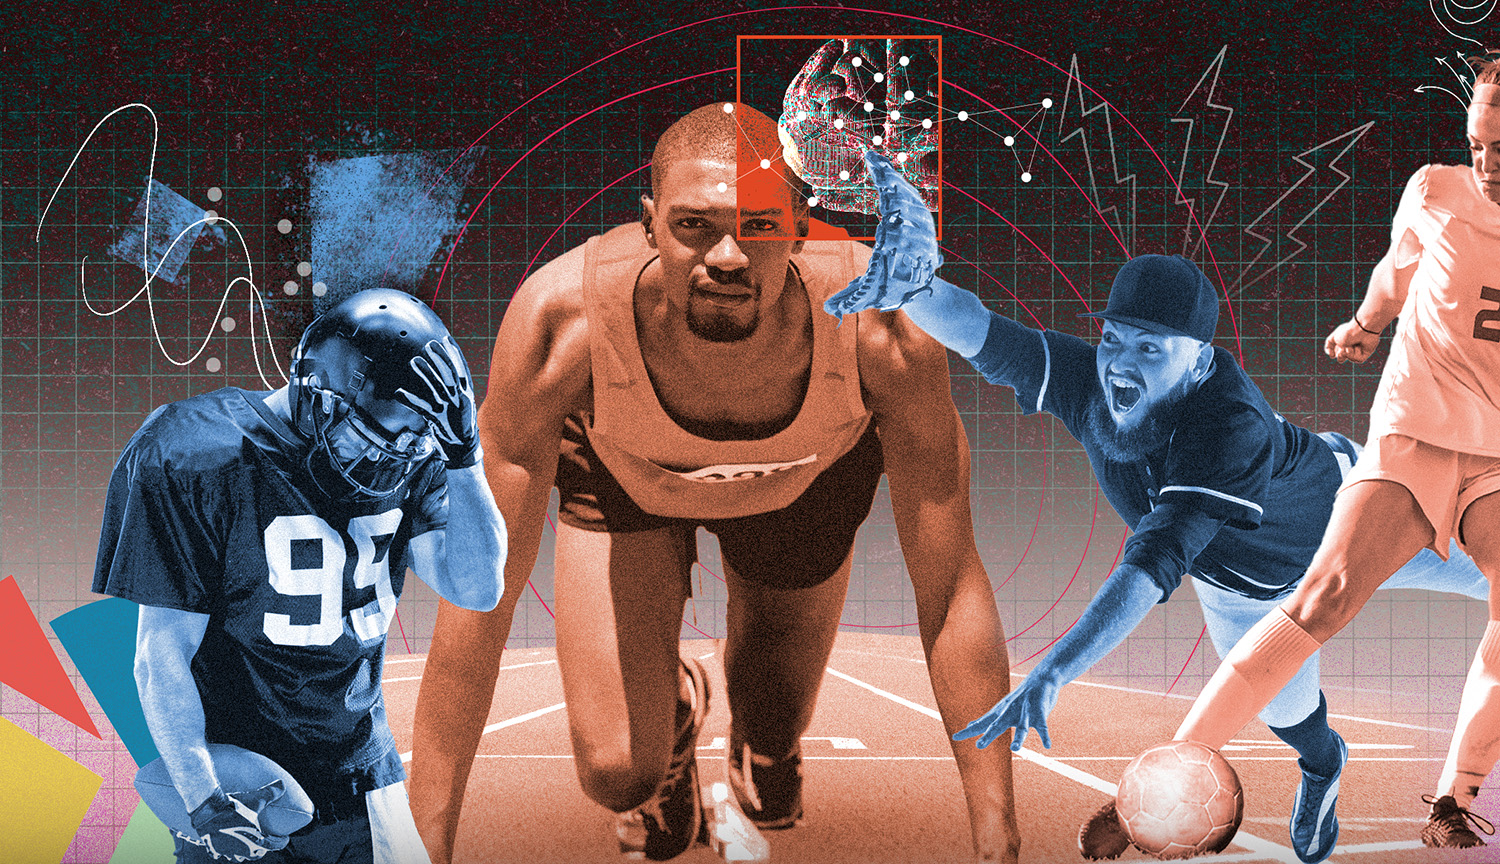 Un collage de atletas con un jugador de fútbol americano consternado, un futbolista concentrado, un corredor en la línea de salida y un jugador de béisbol lanzándose a por la pelota.